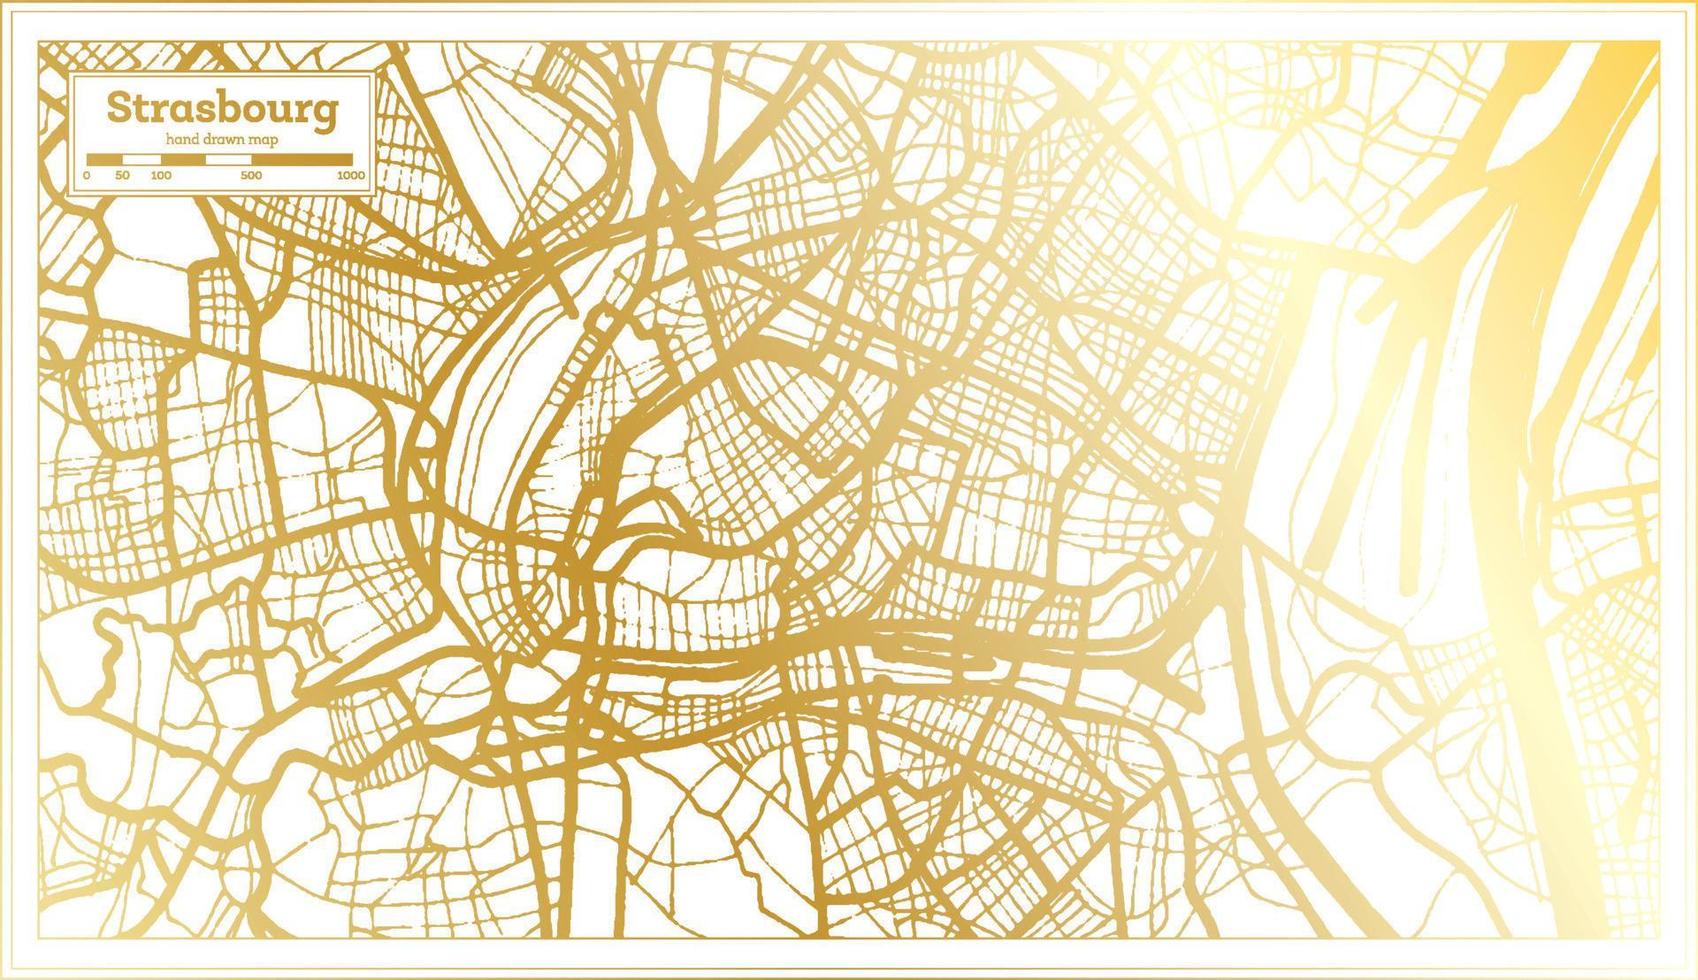 plan de la ville de strasbourg france dans un style rétro de couleur dorée. carte muette. vecteur